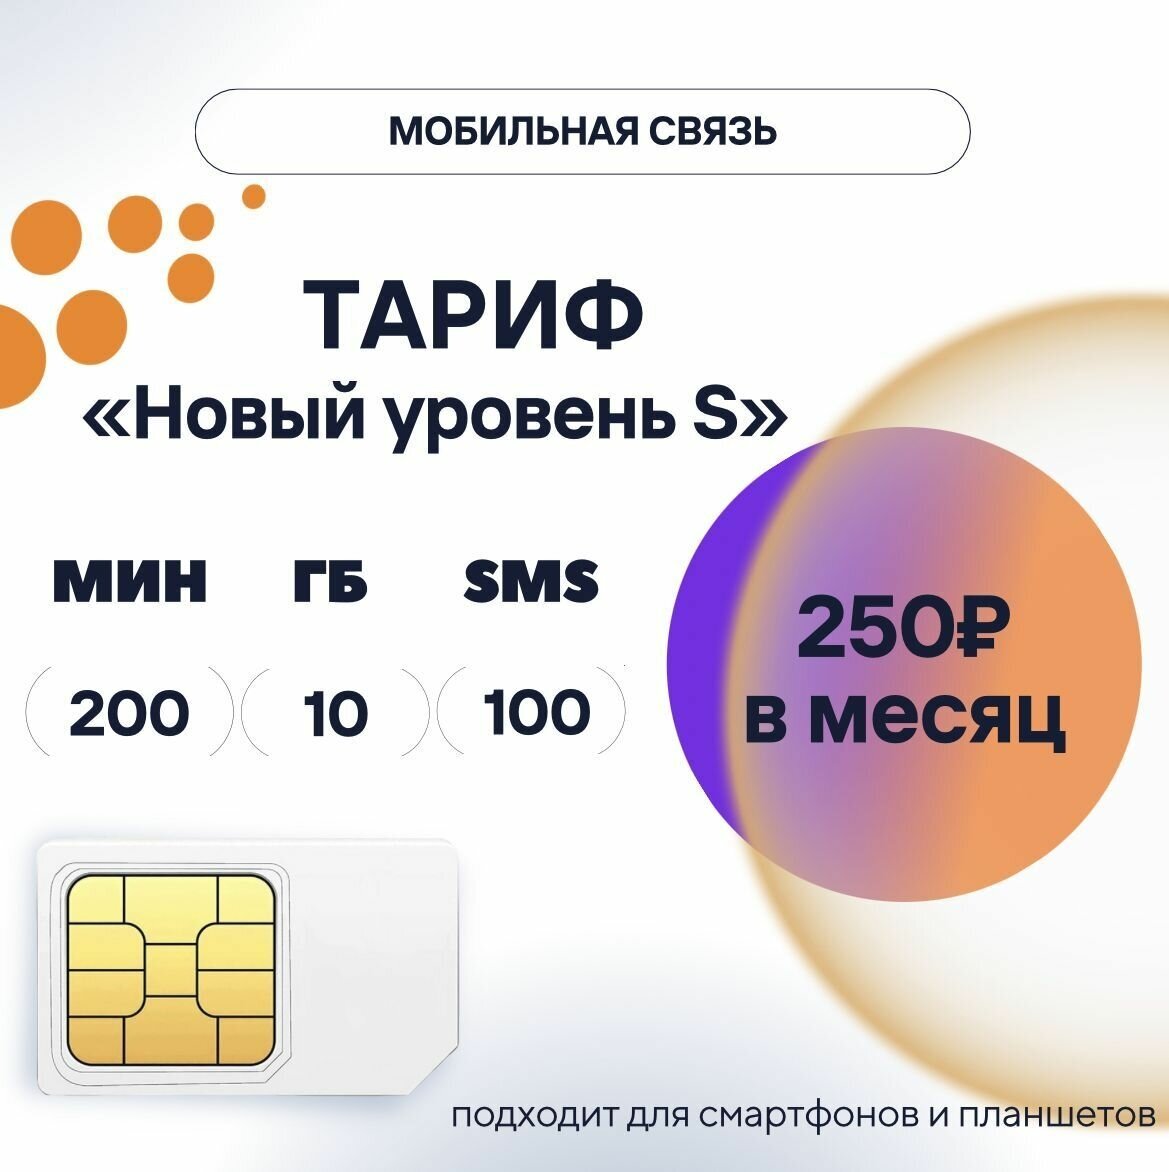 SIM-карта 250 руб/мес, 10 ГБ, 200 мин, 100 смс, тариф "Новый уровень S", сим карта для телефона